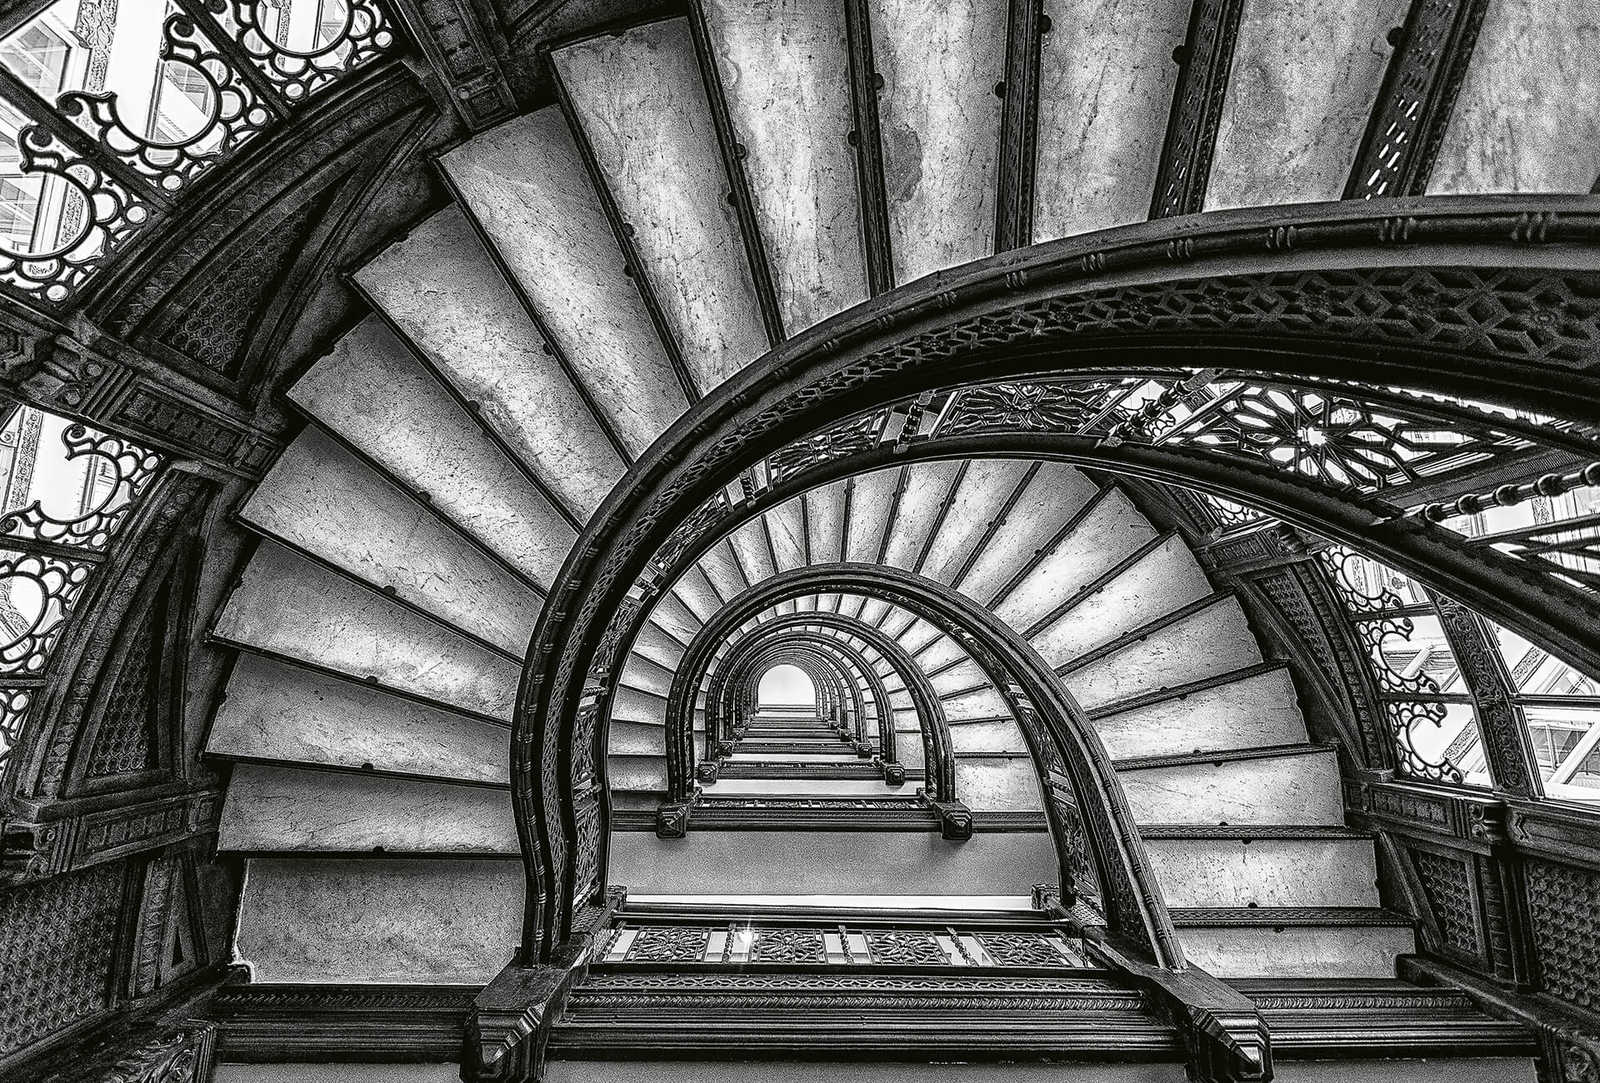 Fototapete alte Treppen – Grau, Weiß, Schwarz
